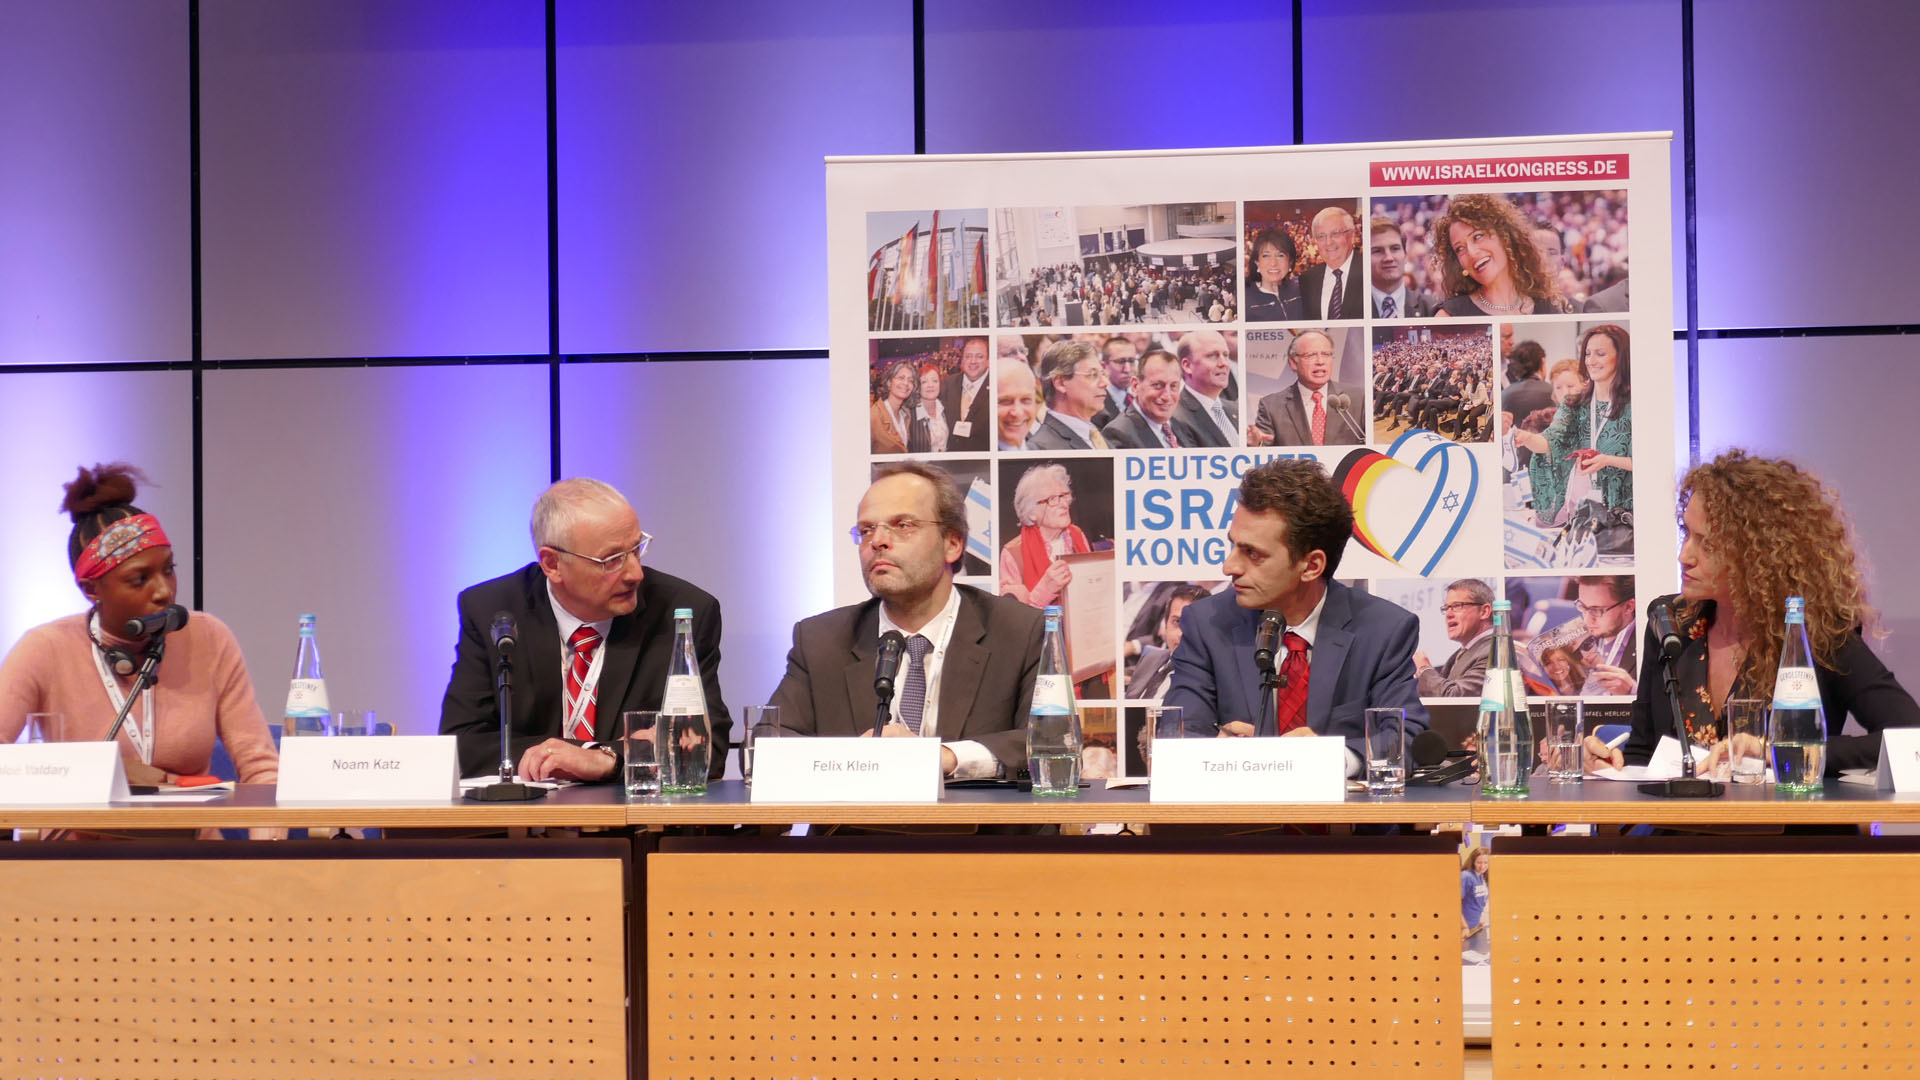 Beim 5. Deutschen Israelkongress in Frankfurt am Main beteiligte sich Chloé Valdary an einer Diskussionsrunde zu BDS